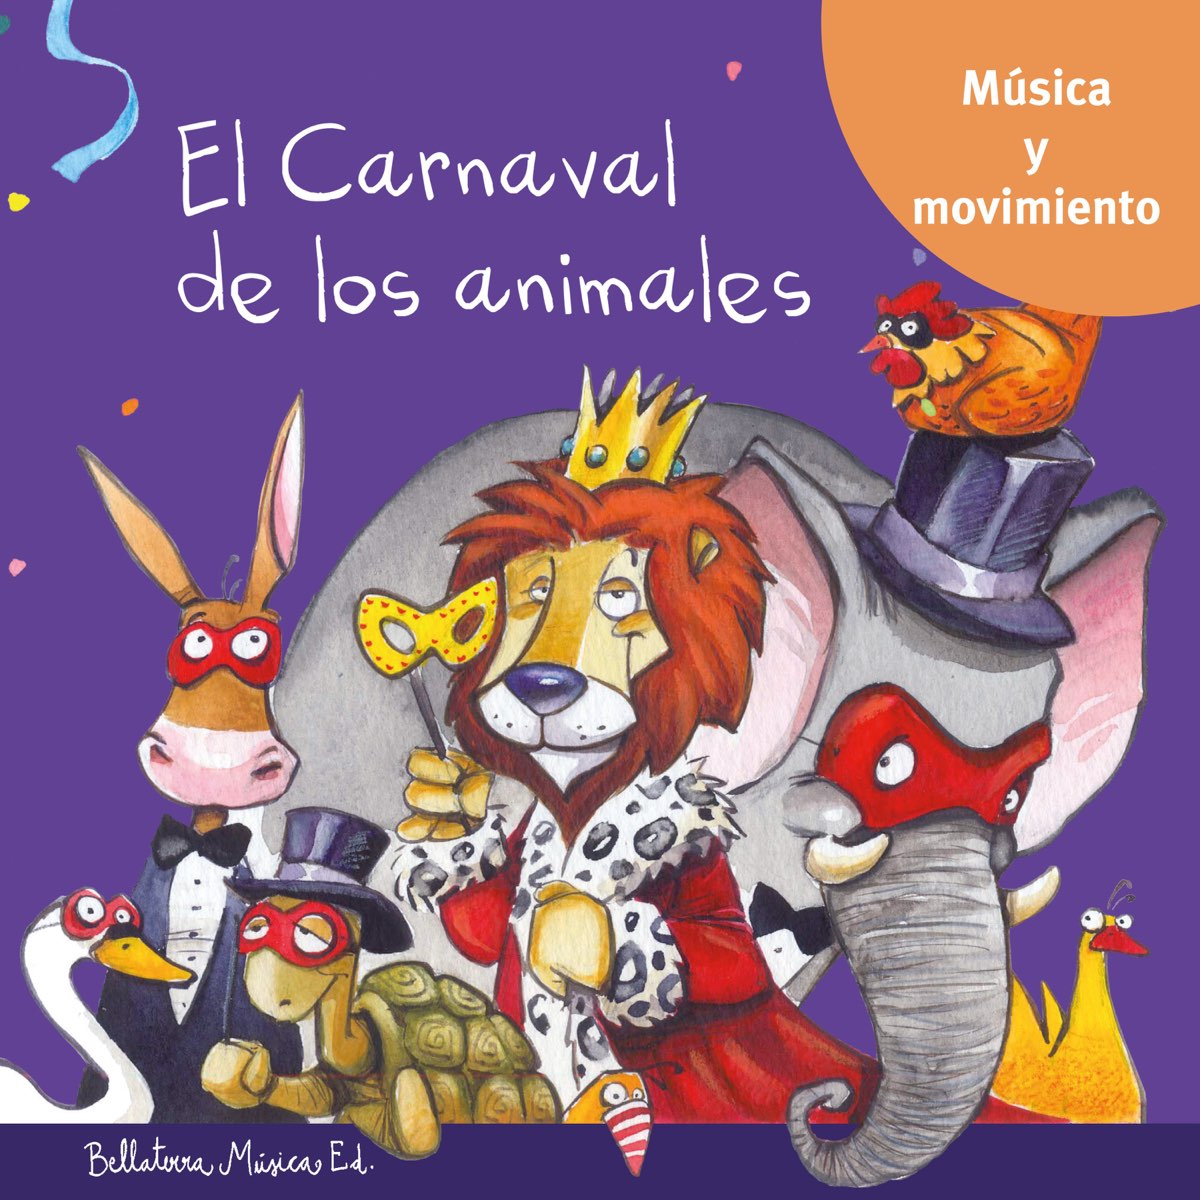 El Carnaval de los animales: Música y moviento